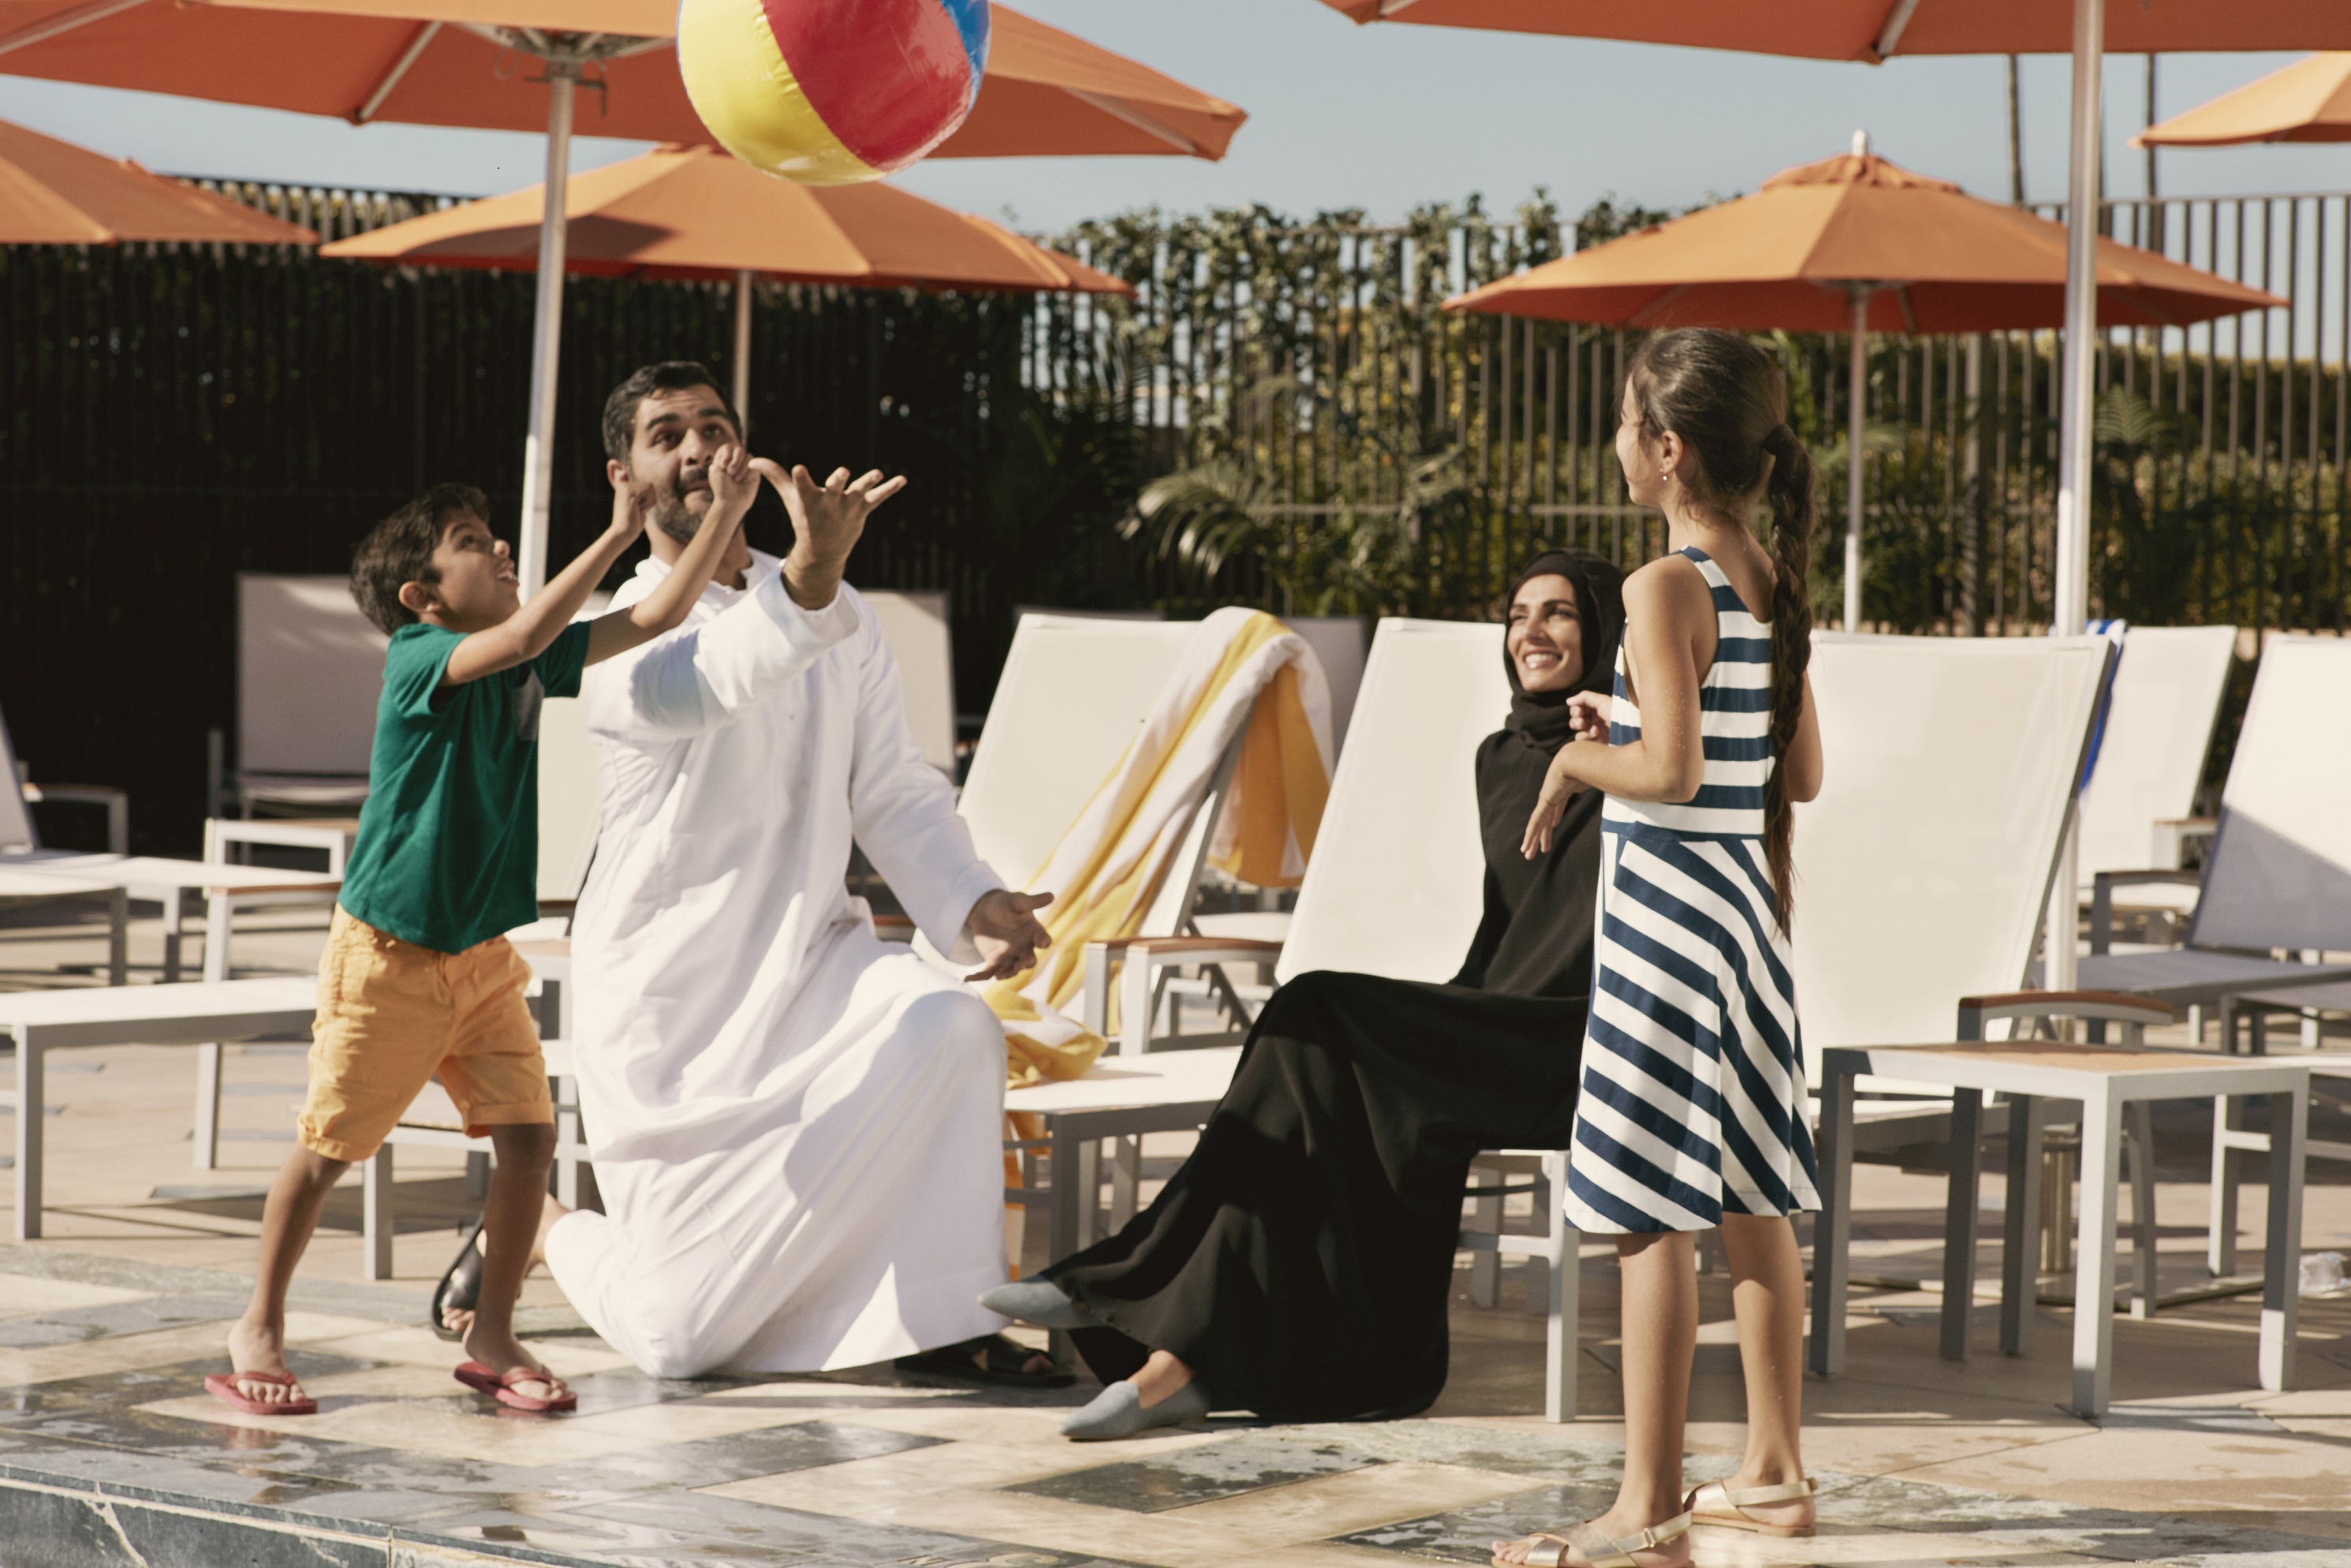 عروض فندق شيراتون مول الإمارات خلال مفاجآت صيف دبي